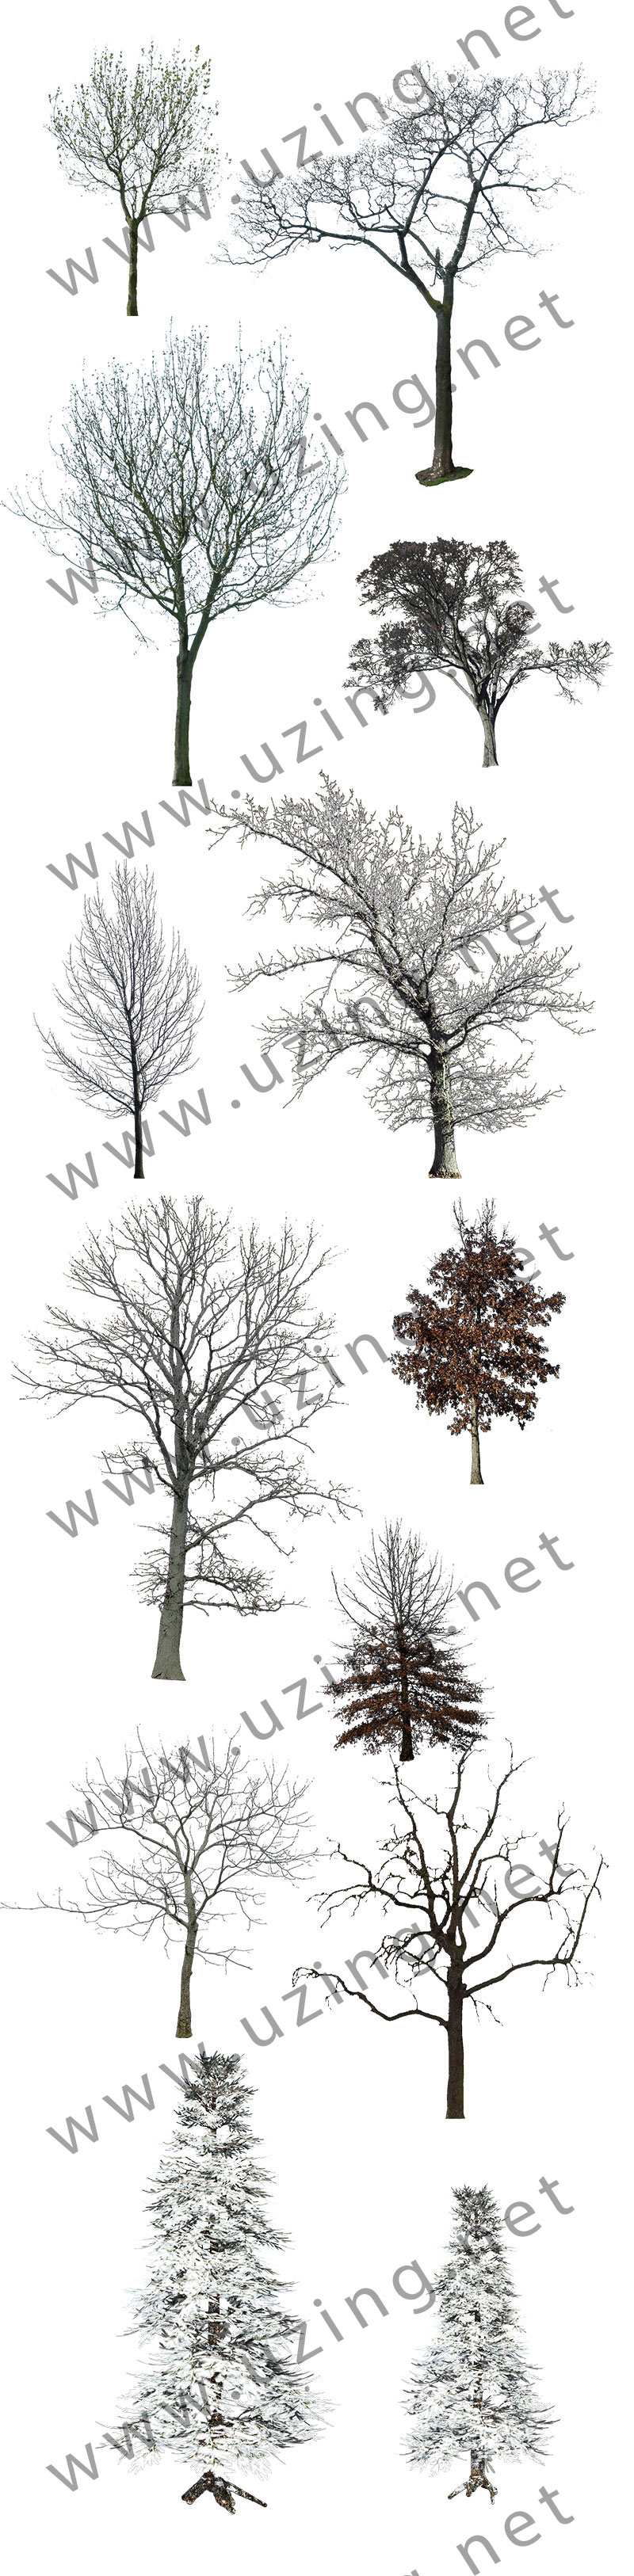 冬树1.jpg